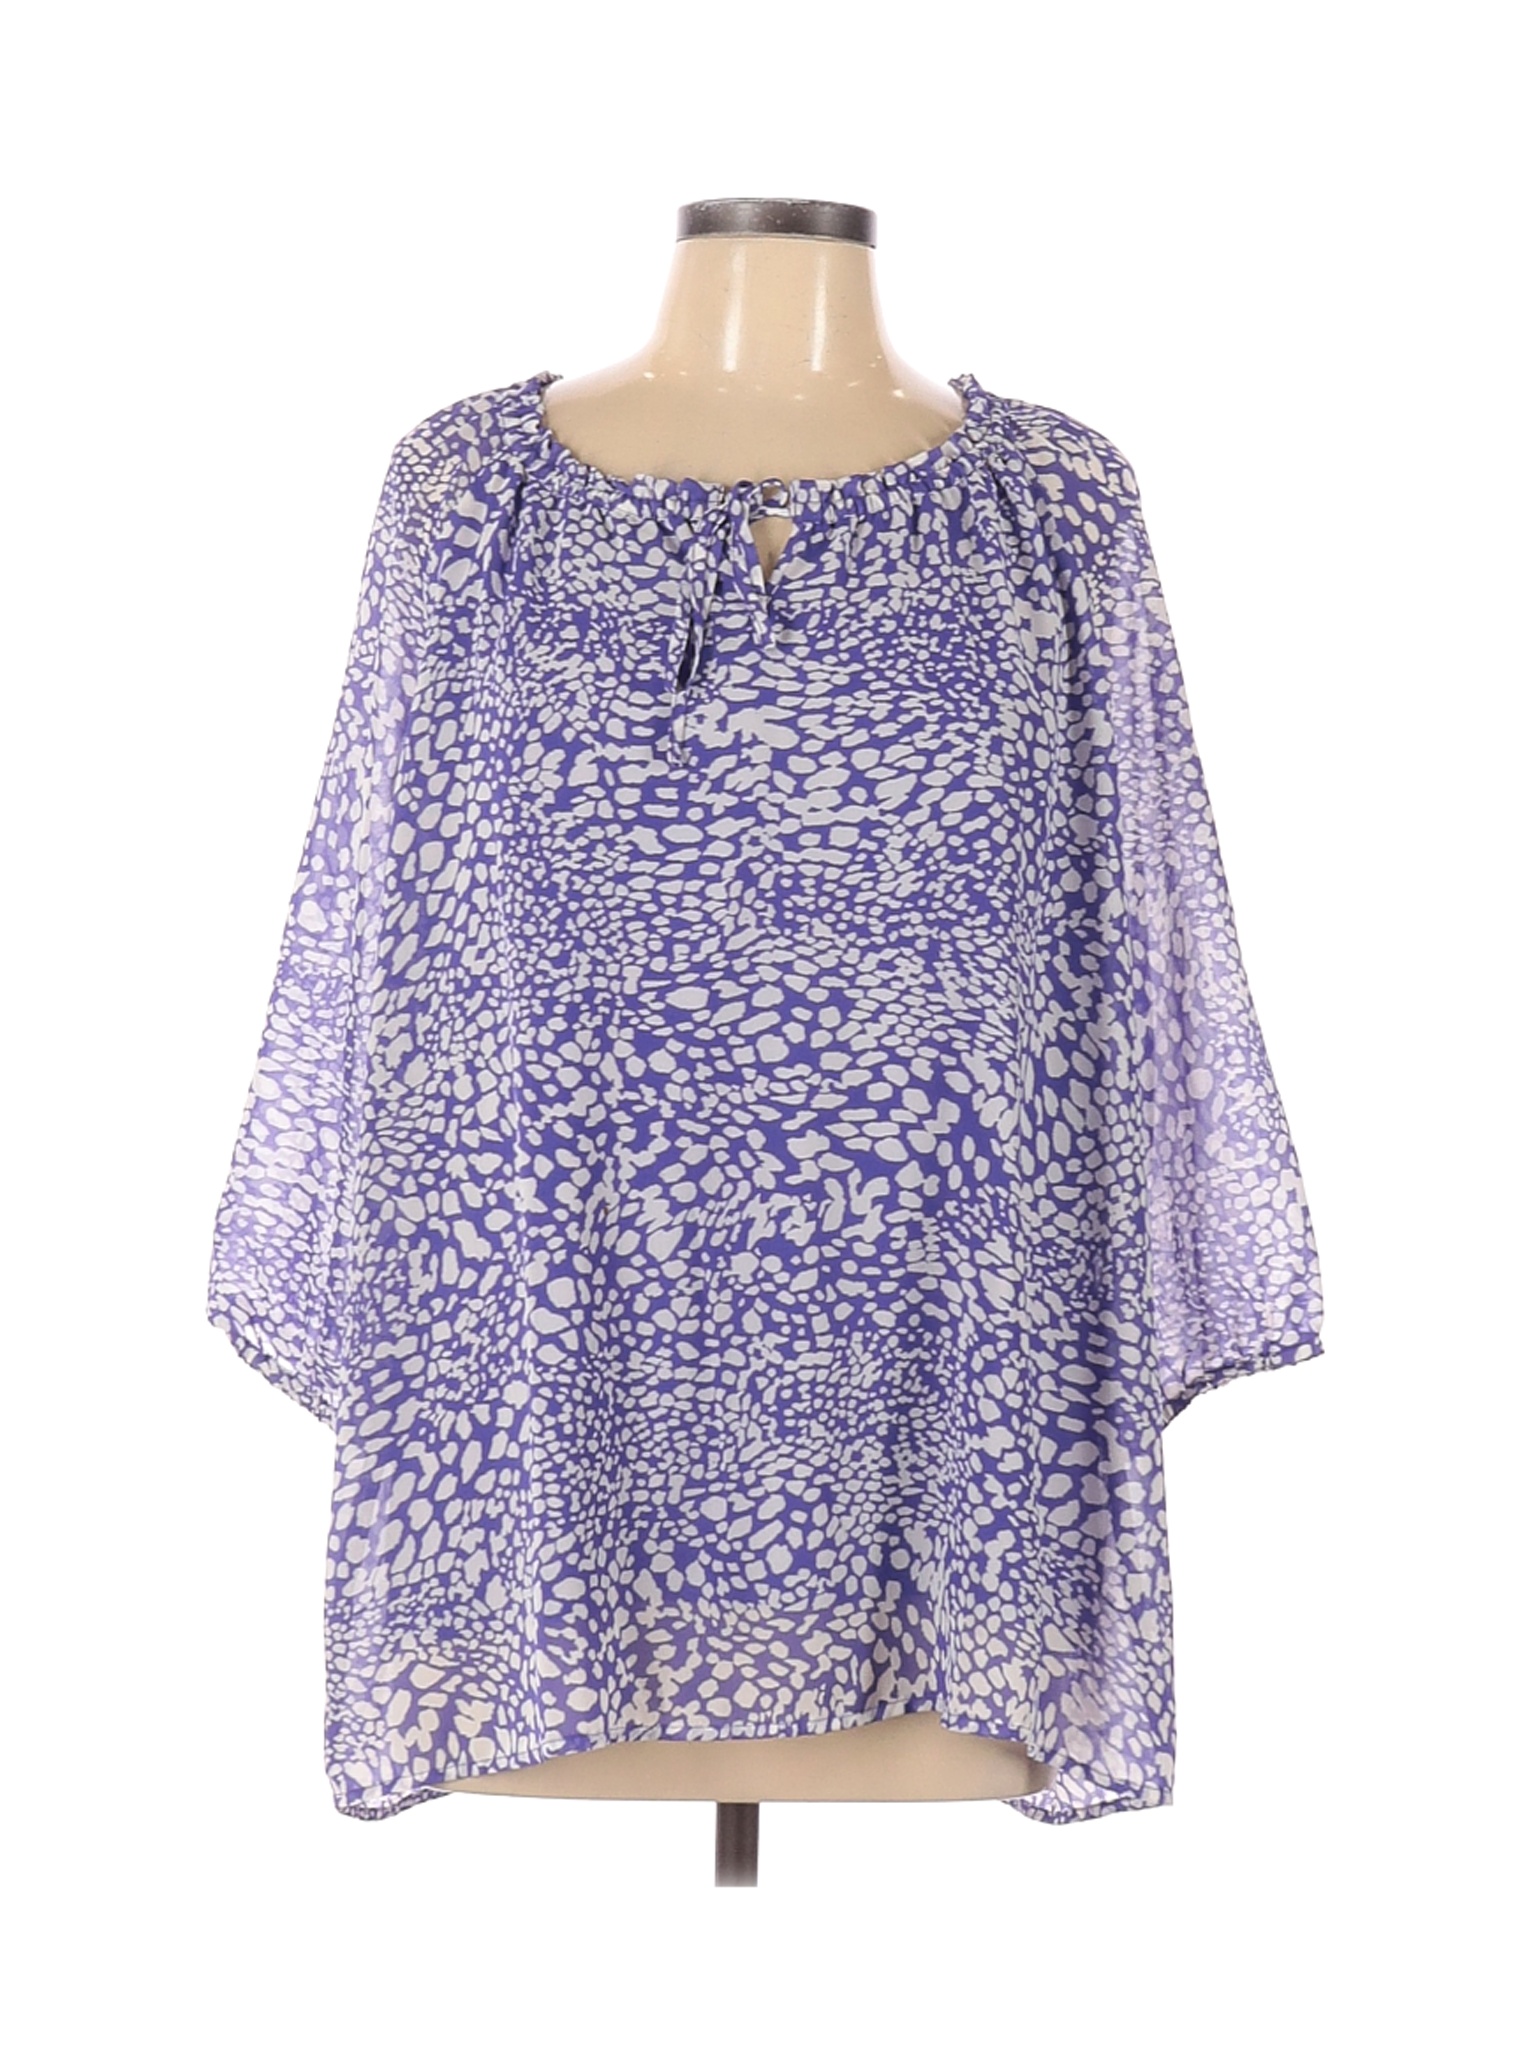 Denim & Co Women Purple Long Sleeve Blouse L | eBay